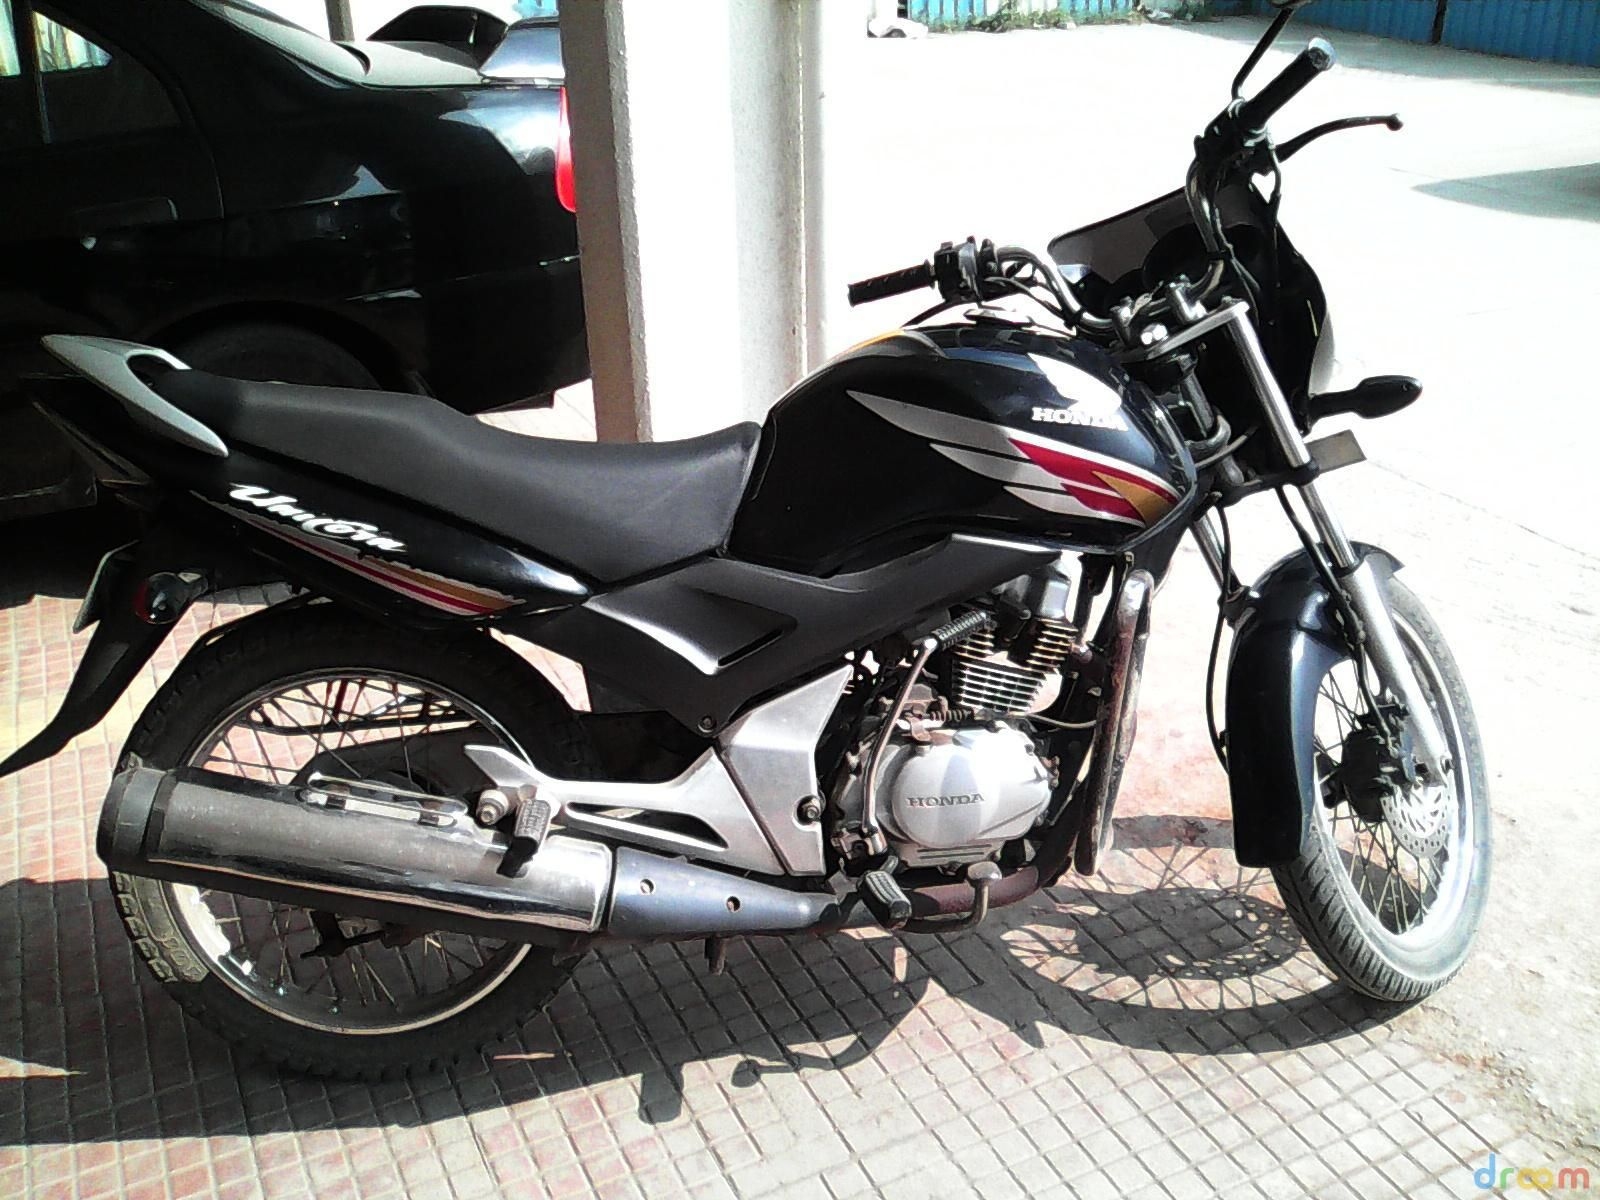 Honda Cb Unicorn 150 Bike For Sale In Pune Id 1415435660